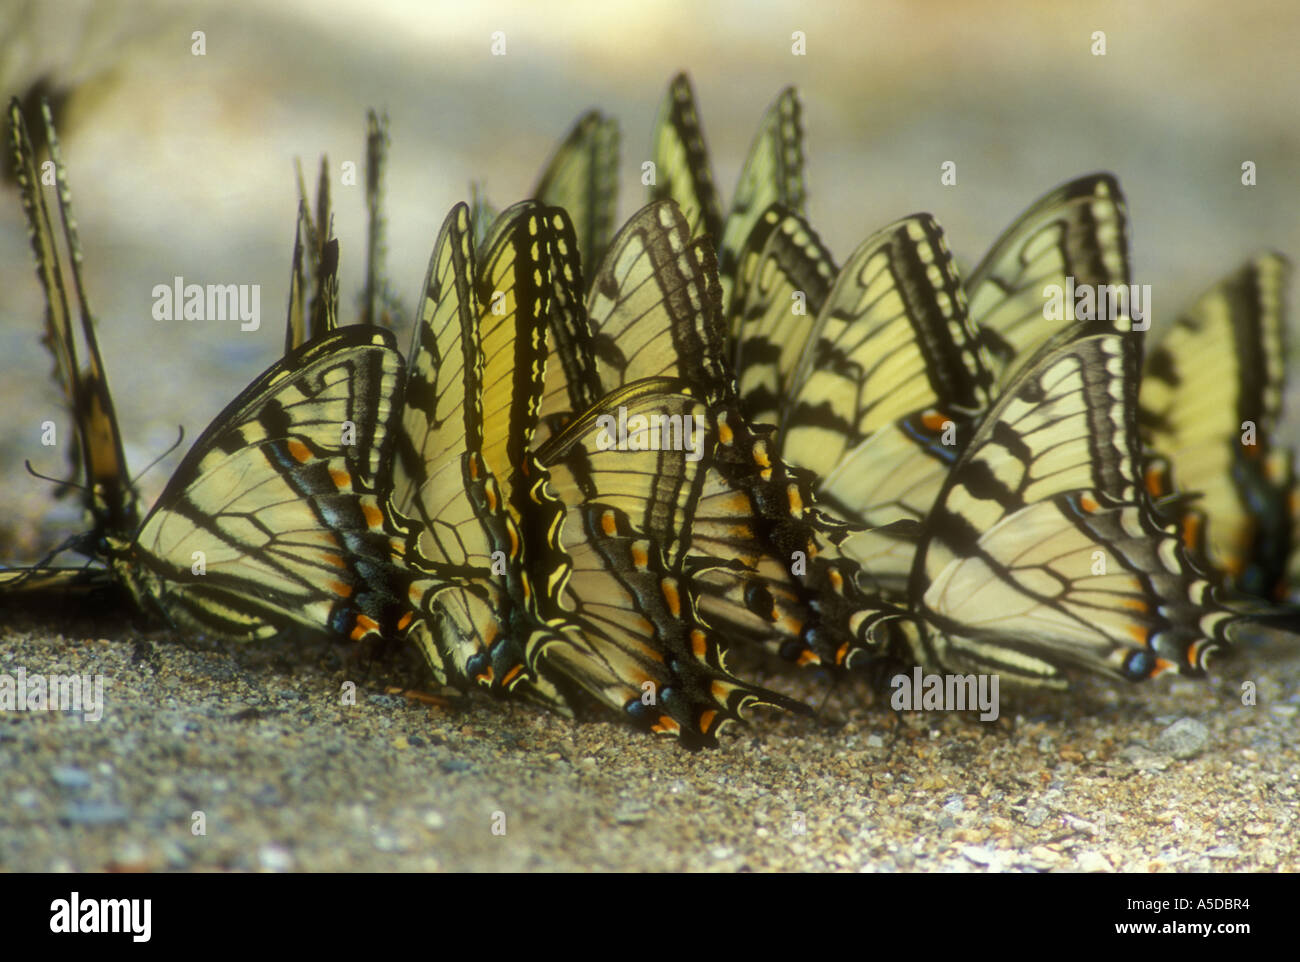 Tiger Schwalbenschwanz (Papilio spp.) Puddling Schmetterlinge zu Mineralien am Rande von Asphalt, Great Smoky Mountains National Park, Tennessee angezogen Stockfoto